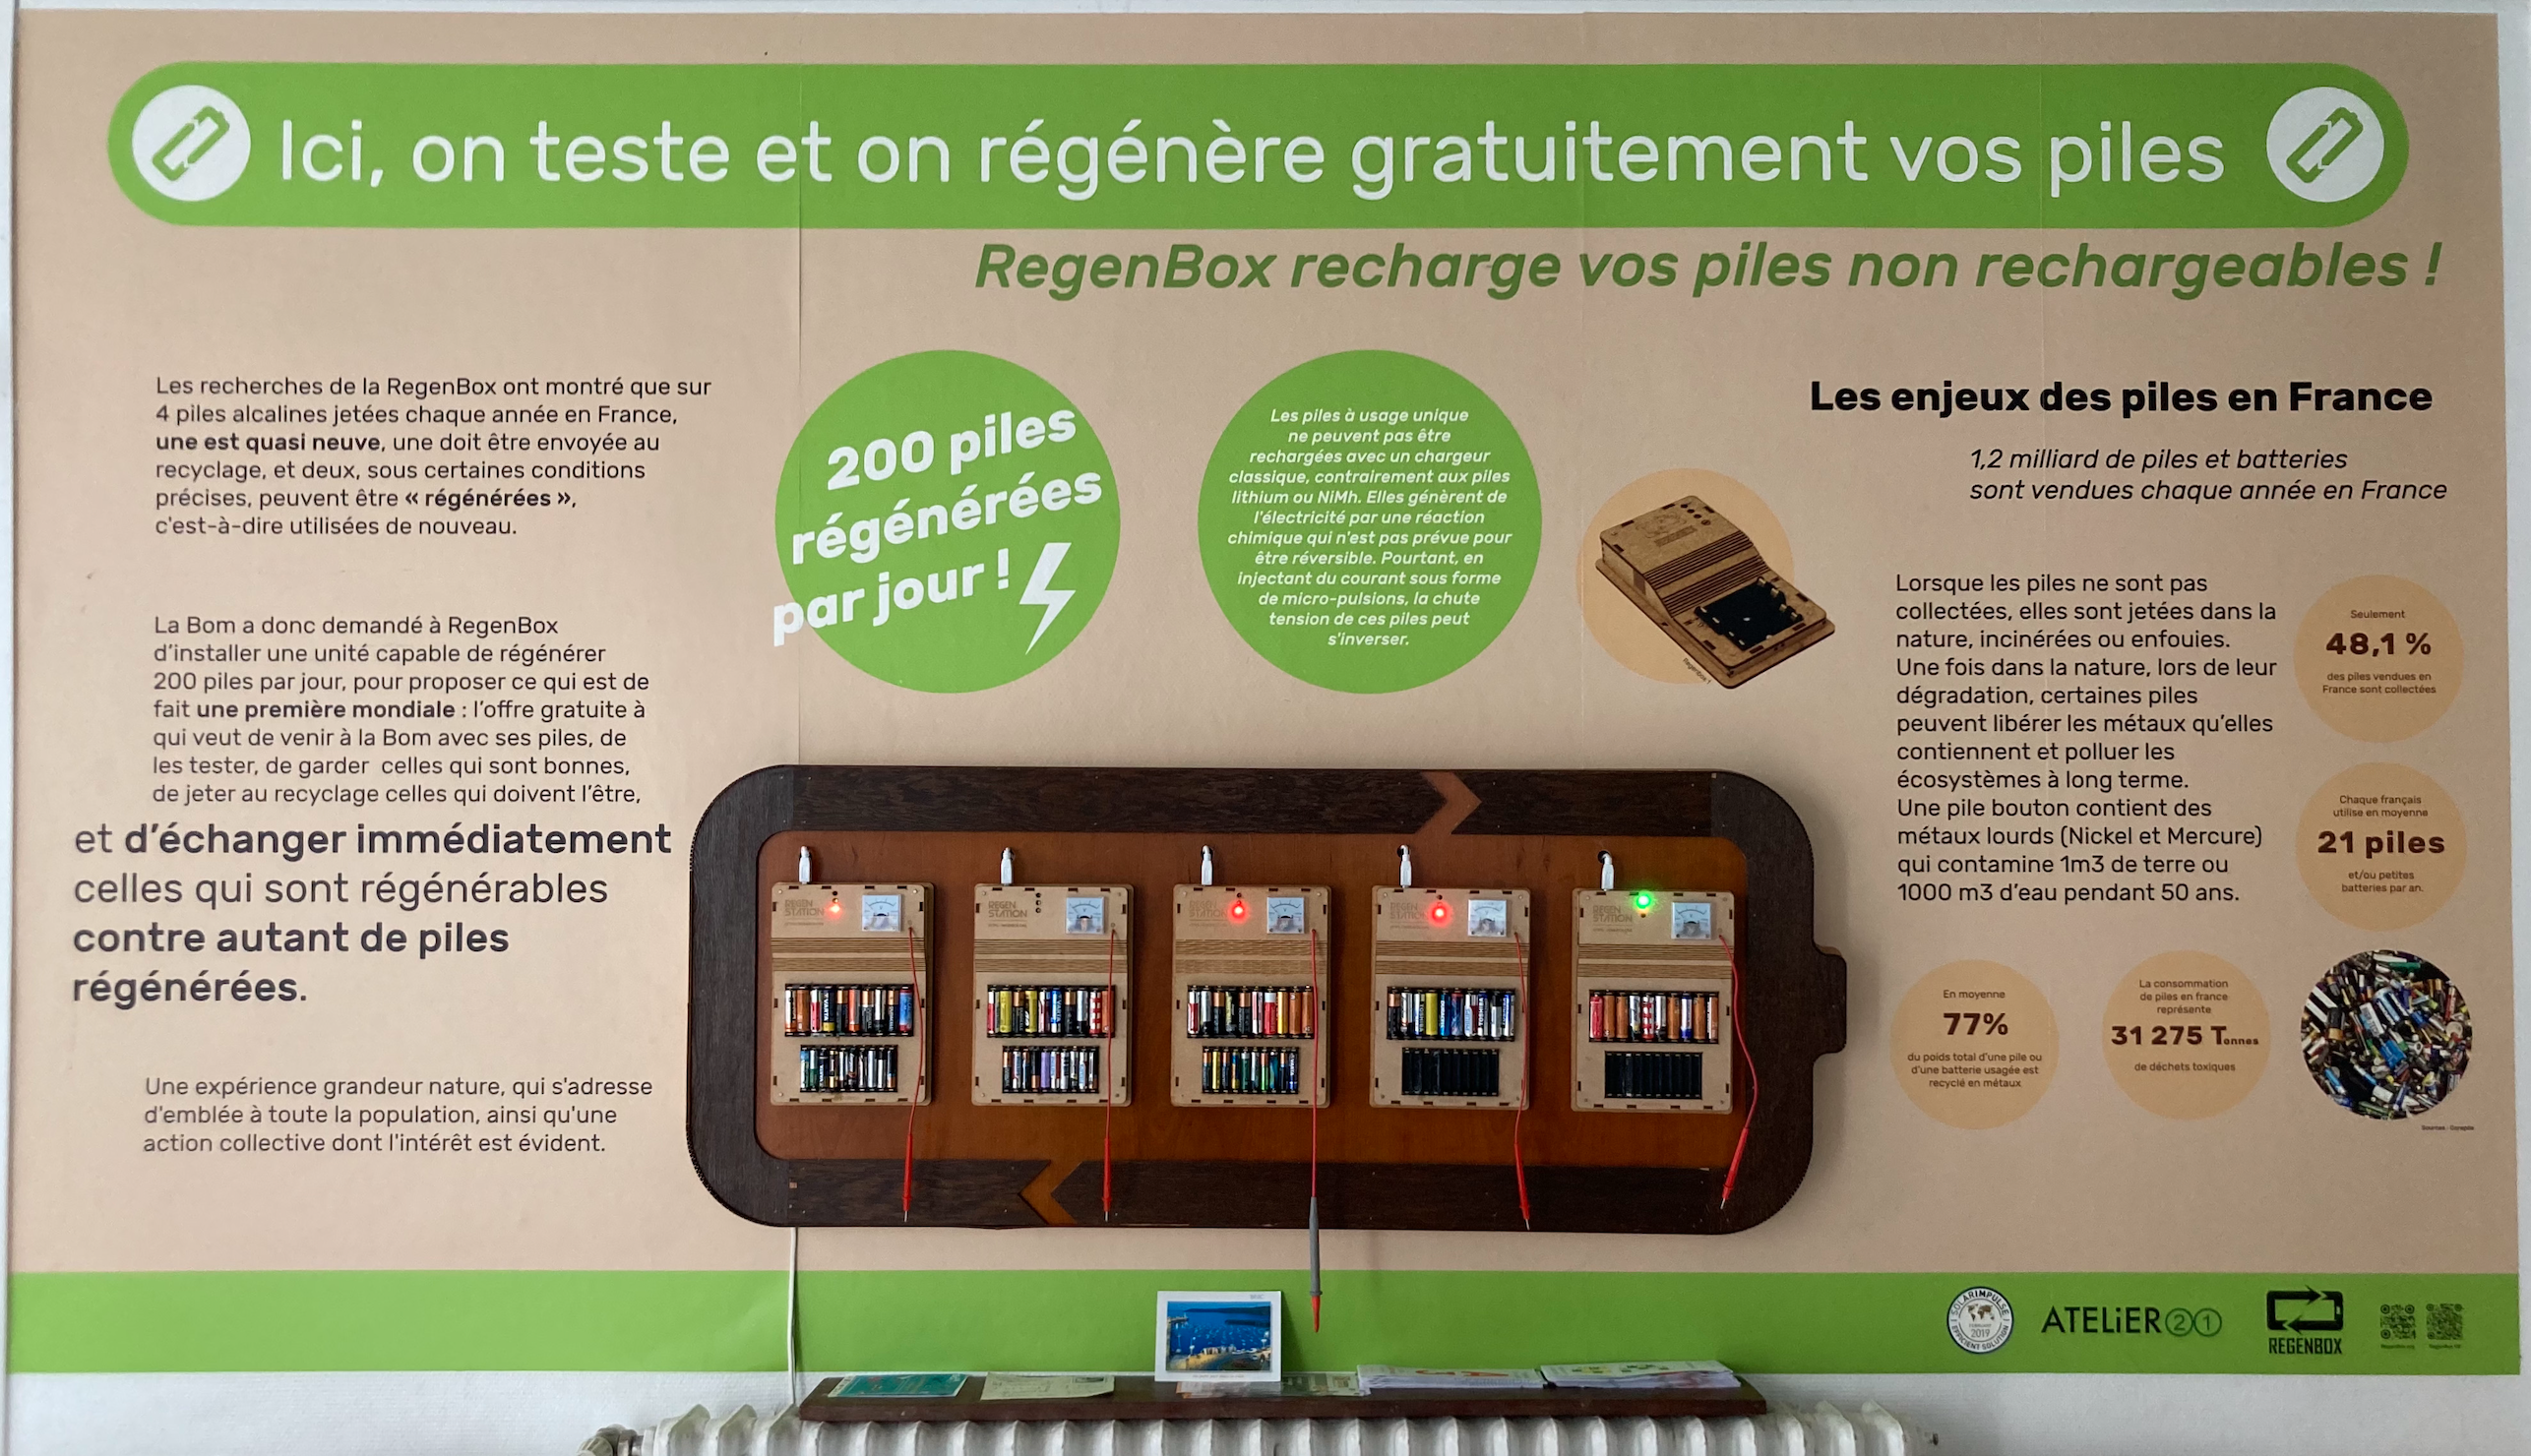 The RegenBox alkaline battery charging station at La BOM. Credit: Shareable